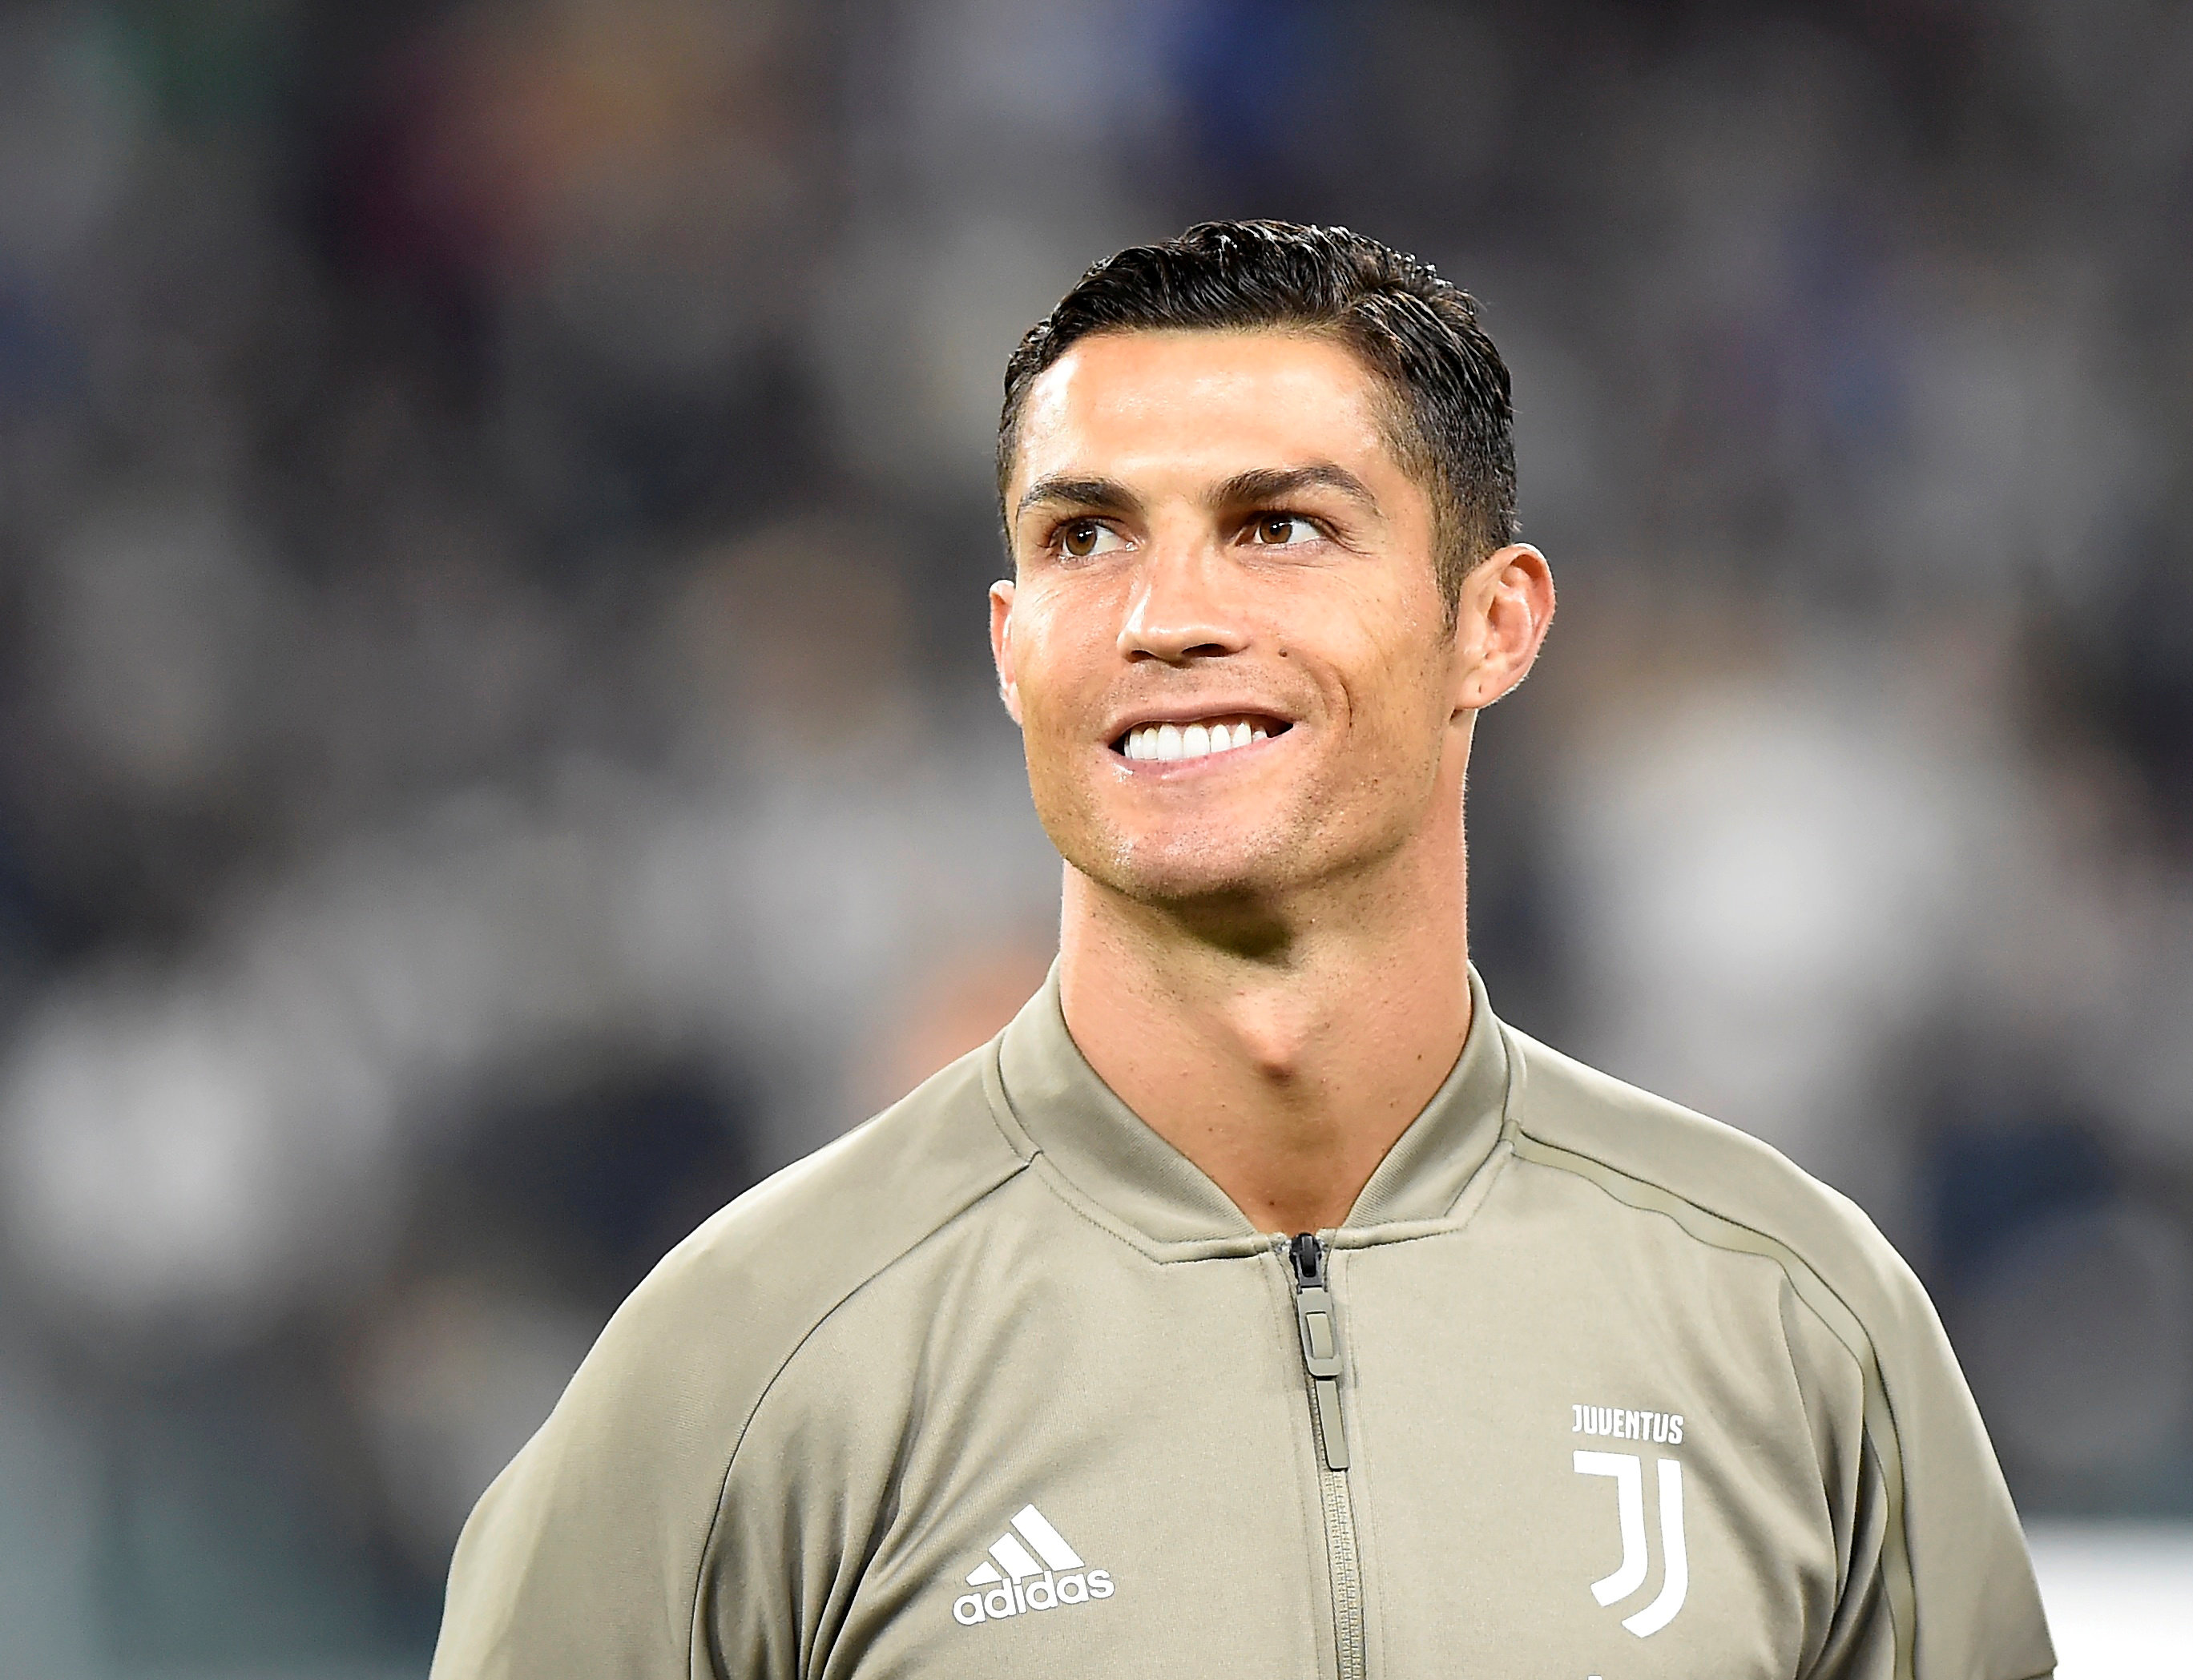 Abogado de Cristiano Ronaldo afirma que las acusaciones son "inventadas"